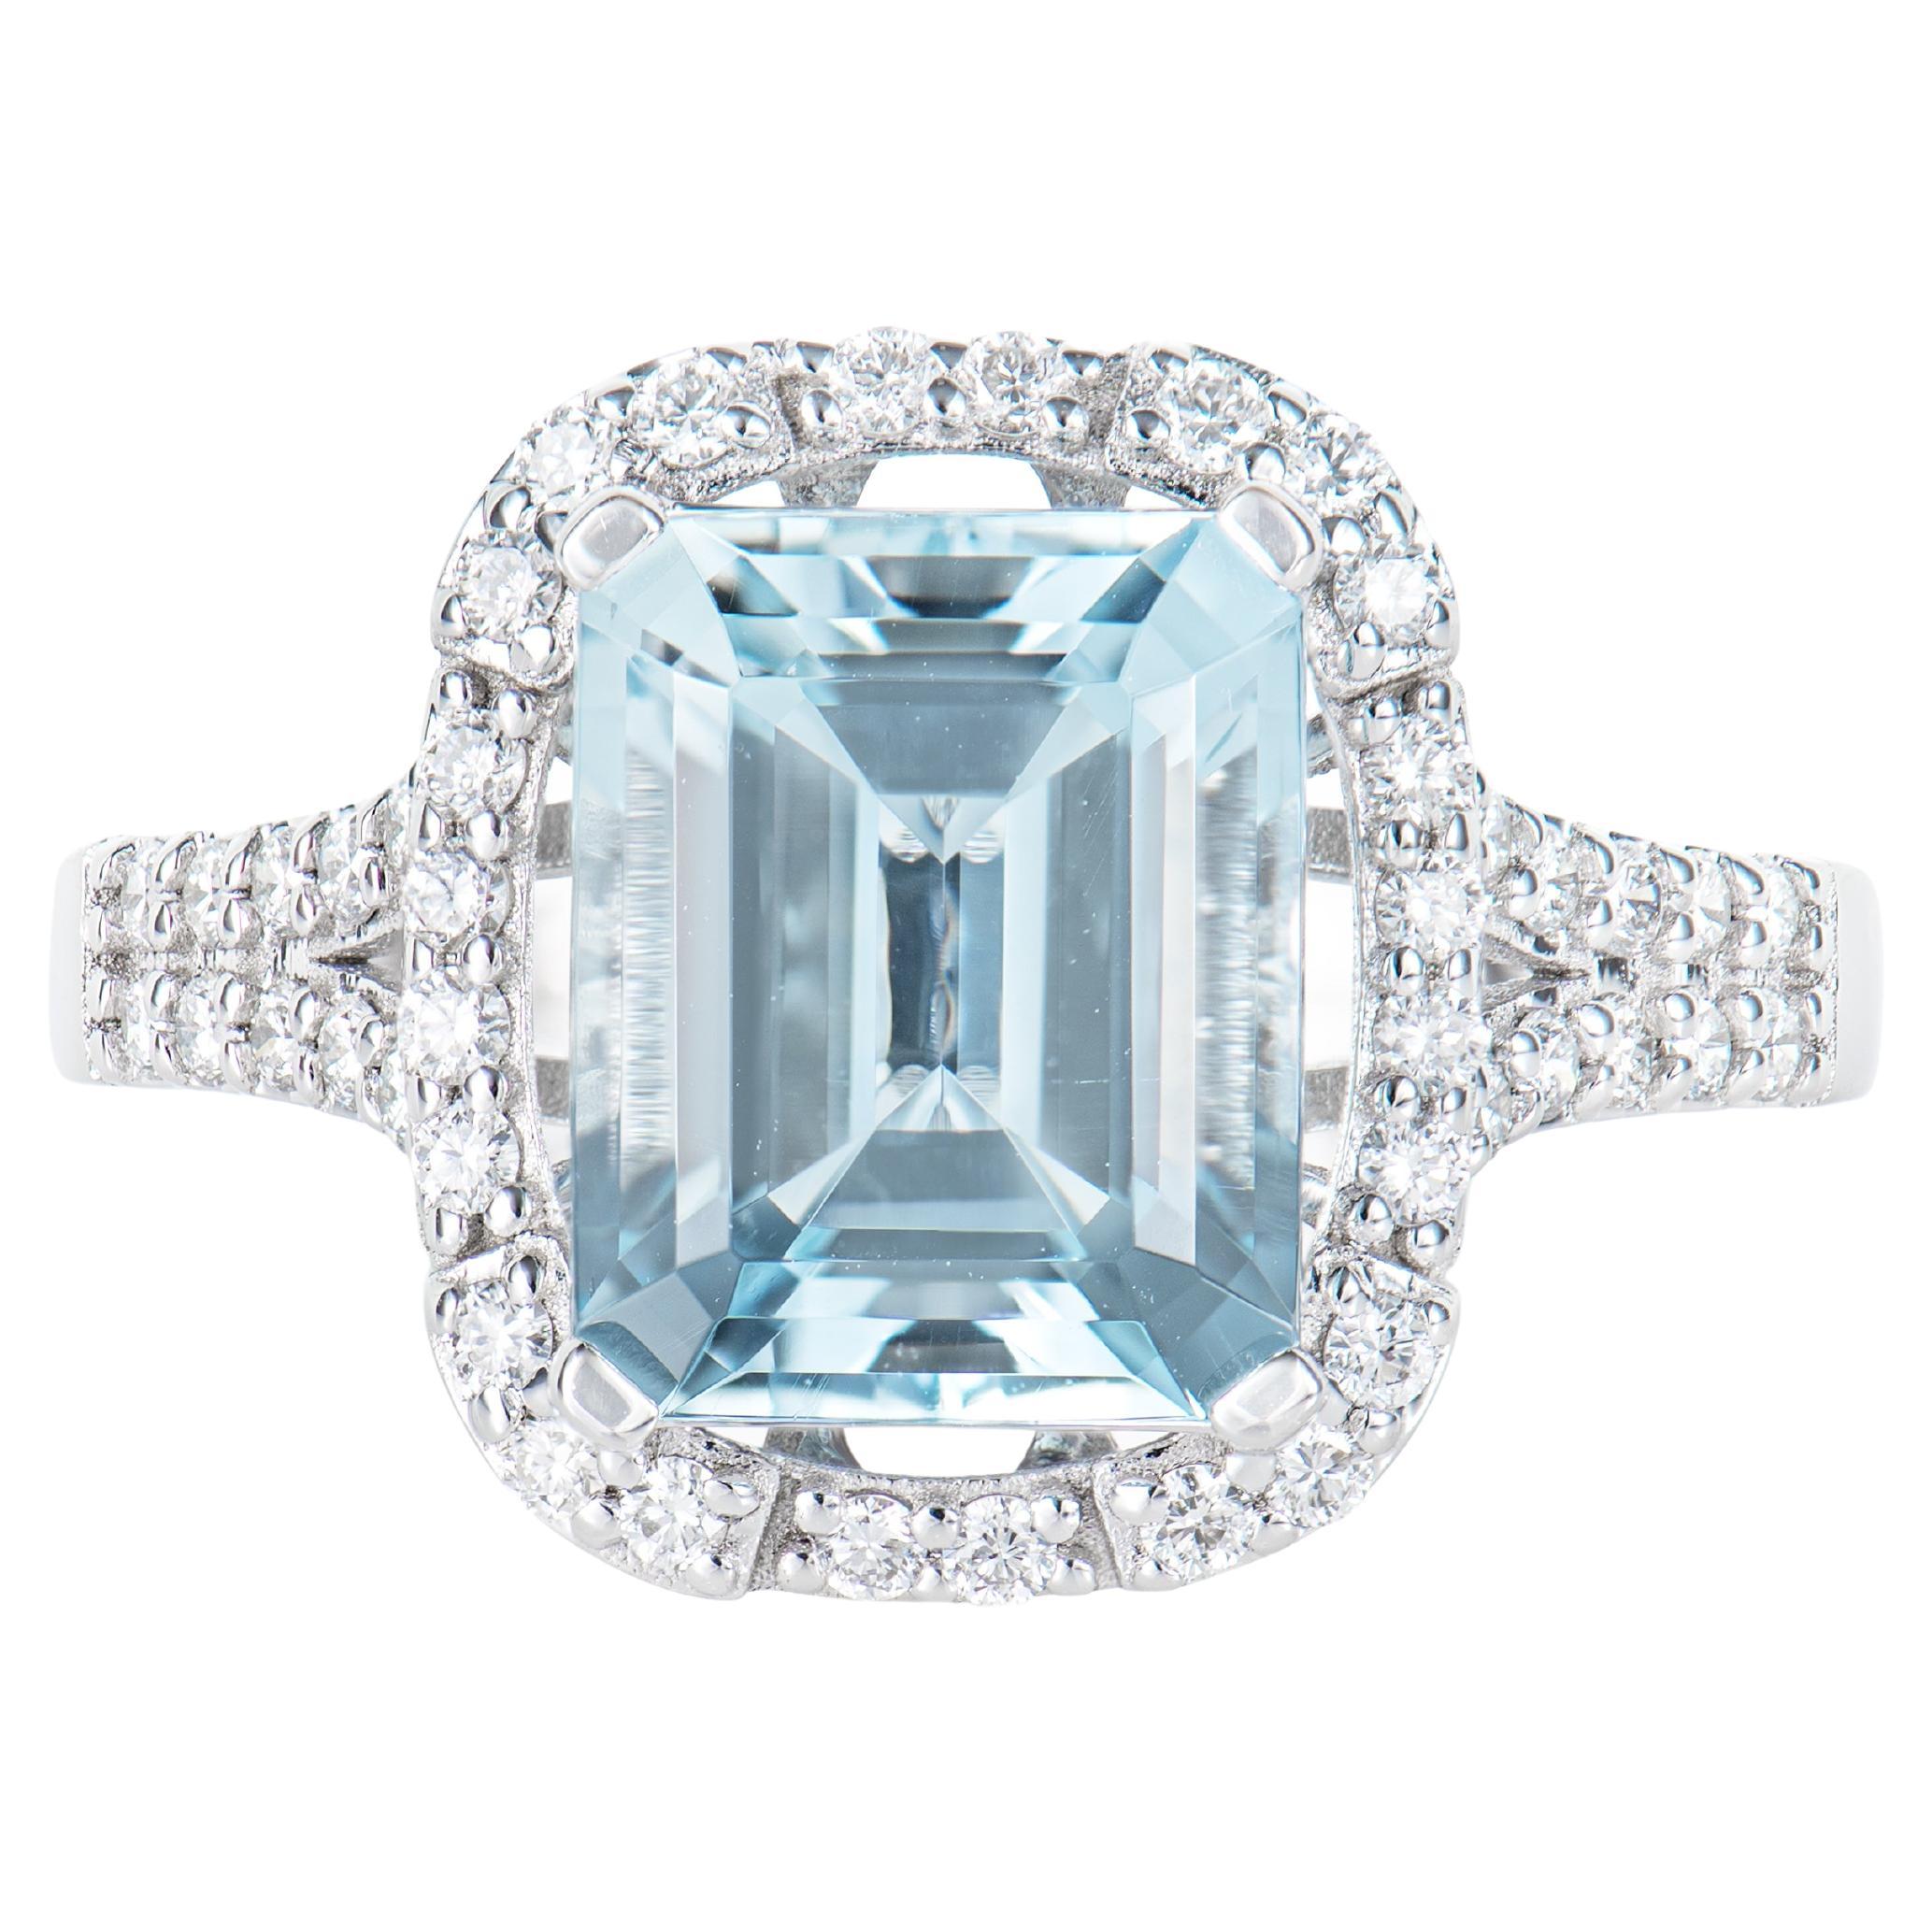 3.03 Carat Aquamarine Elegant Ring in 18 Karat White Gold with White Diamond